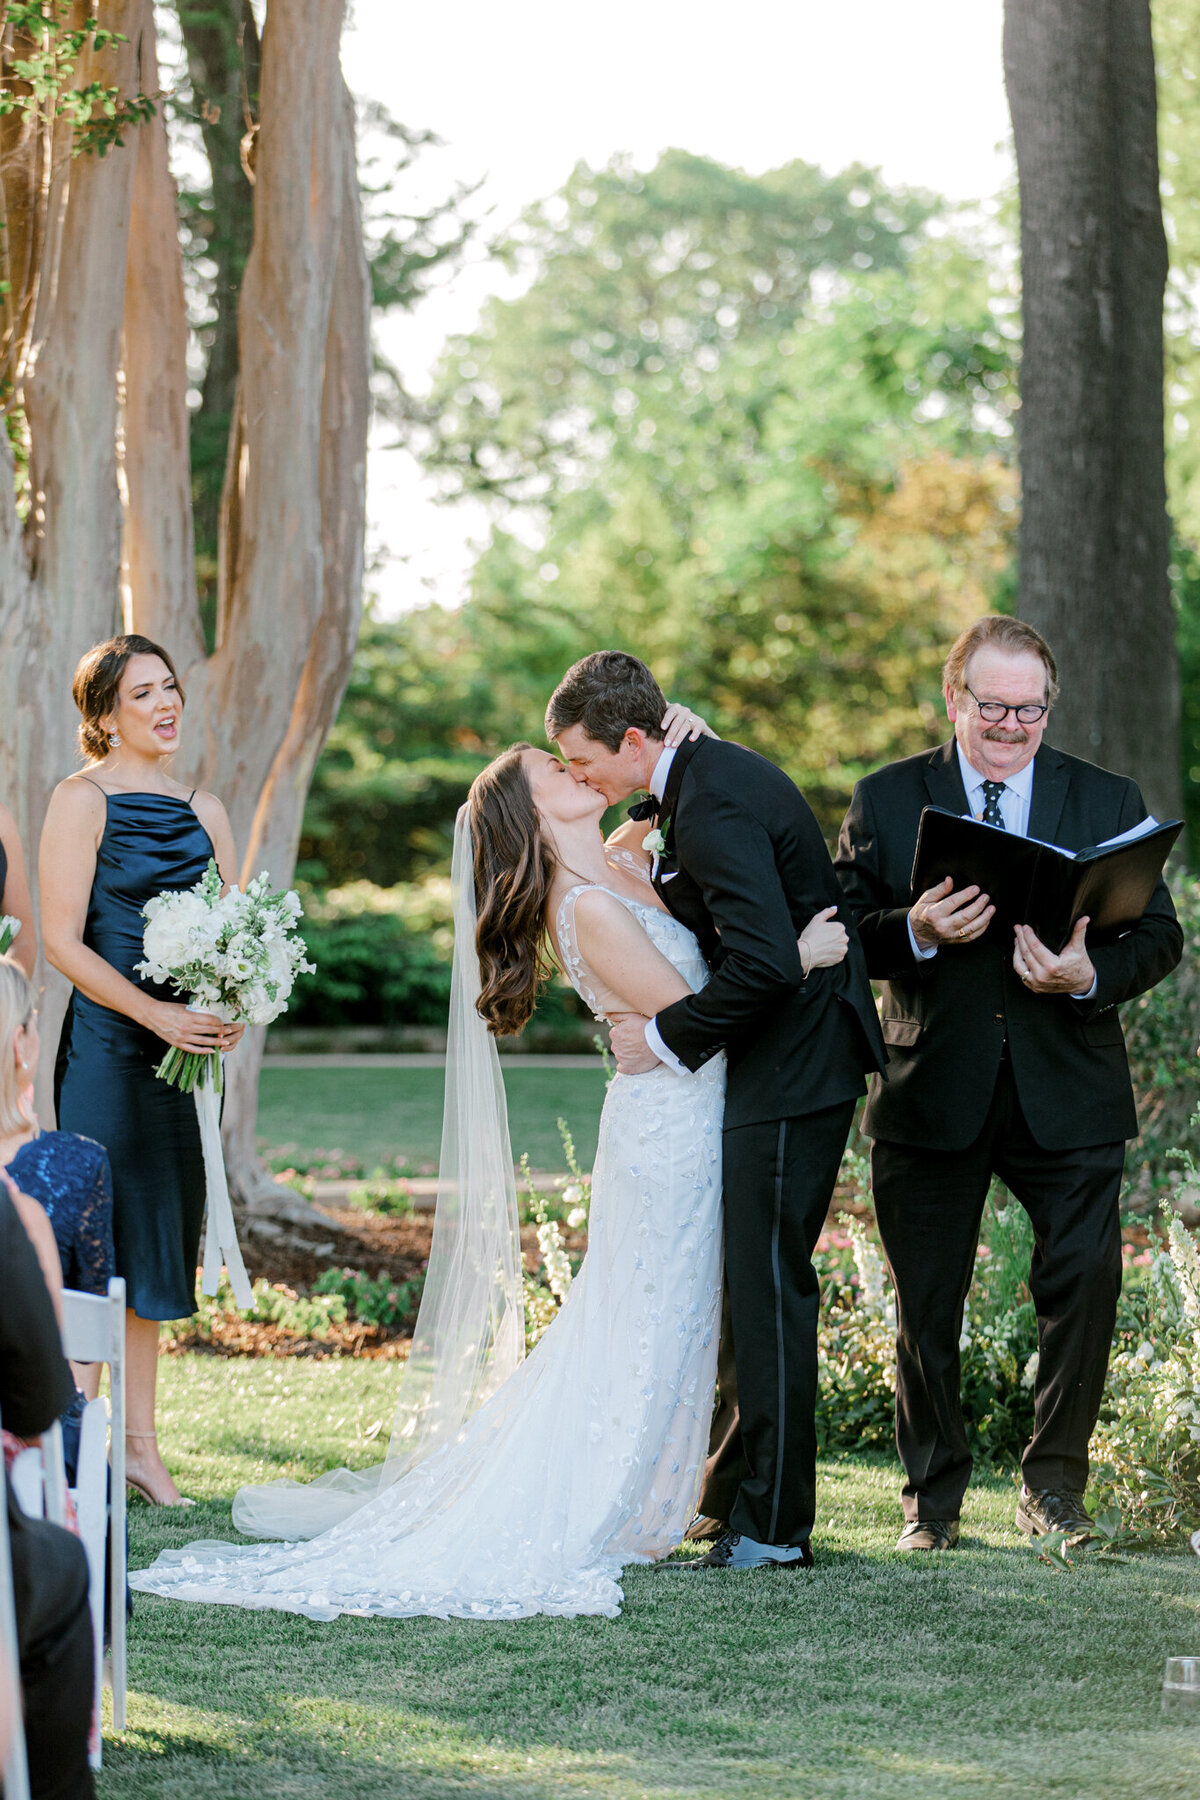 Gena & Matt's Wedding at the Dallas Arboretum | Dallas Wedding Photographer | Sami Kathryn Photography-157